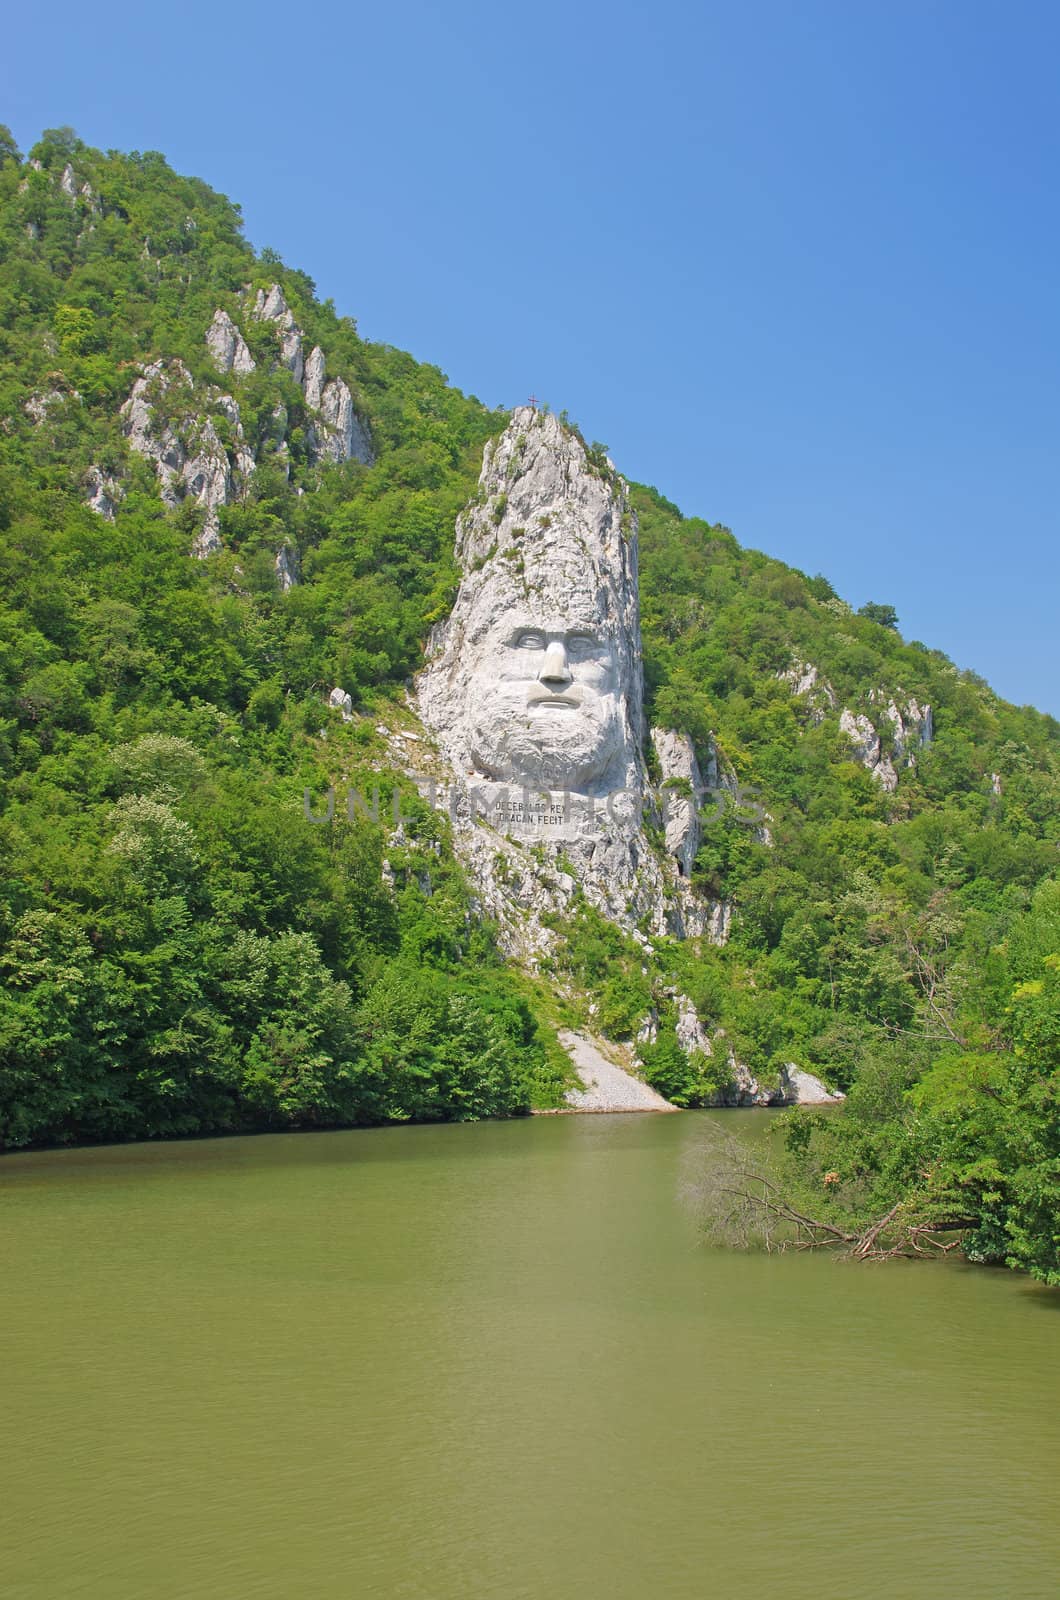 Rock sculpture of Dacian king Decebal on Danube river